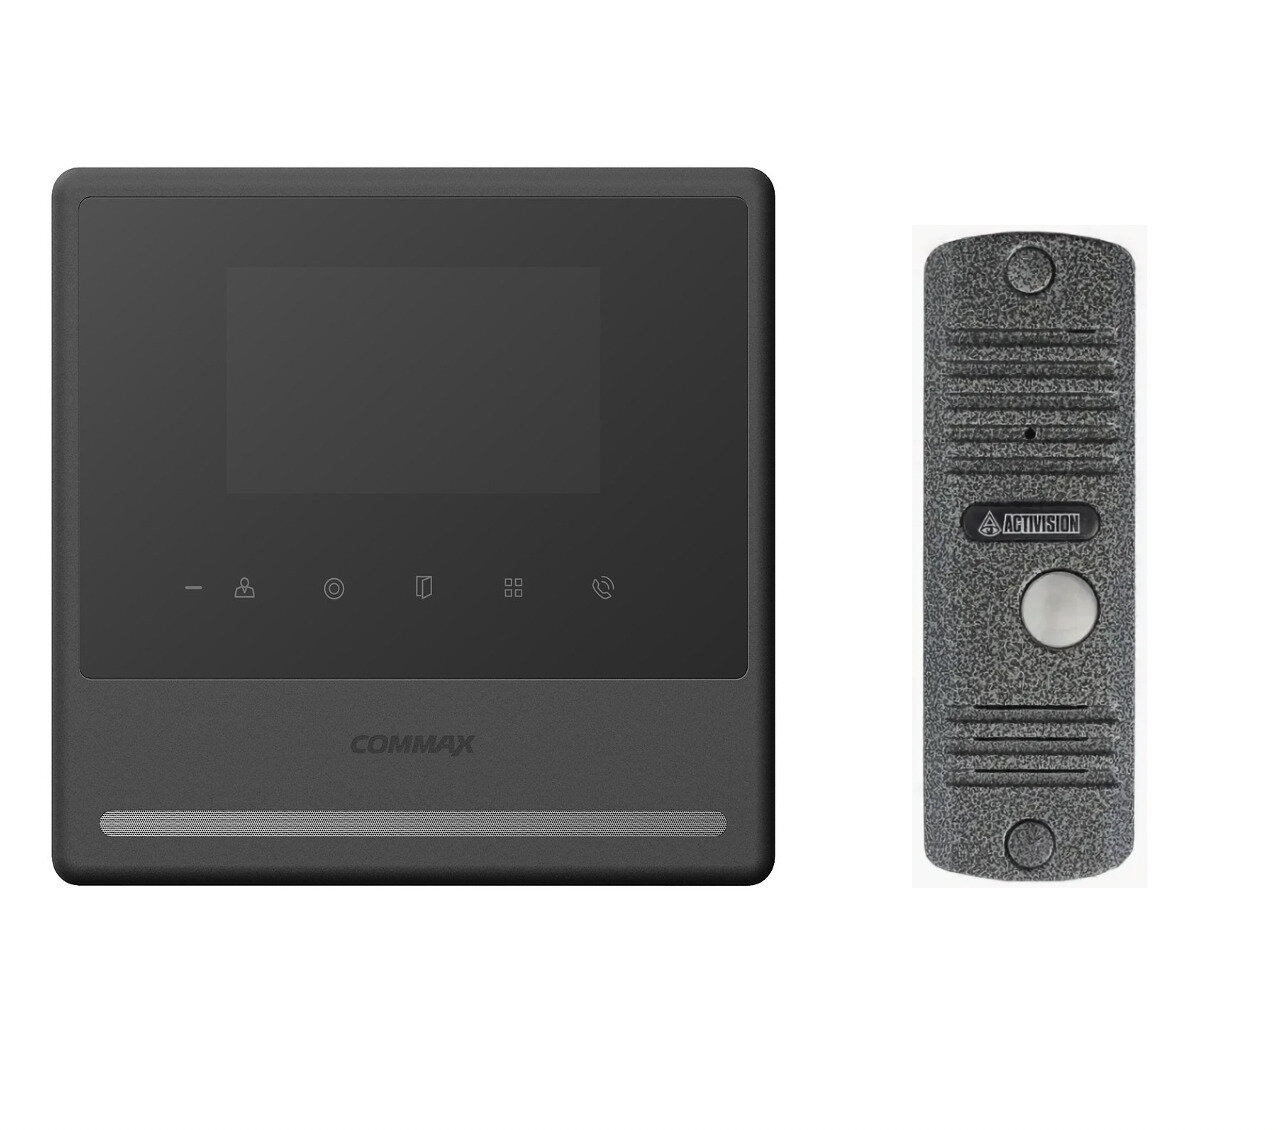 Комплект видеодомофона и вызывной панели COMMAX CDV-43Y (Черный) / AVC 305 (Серебро)